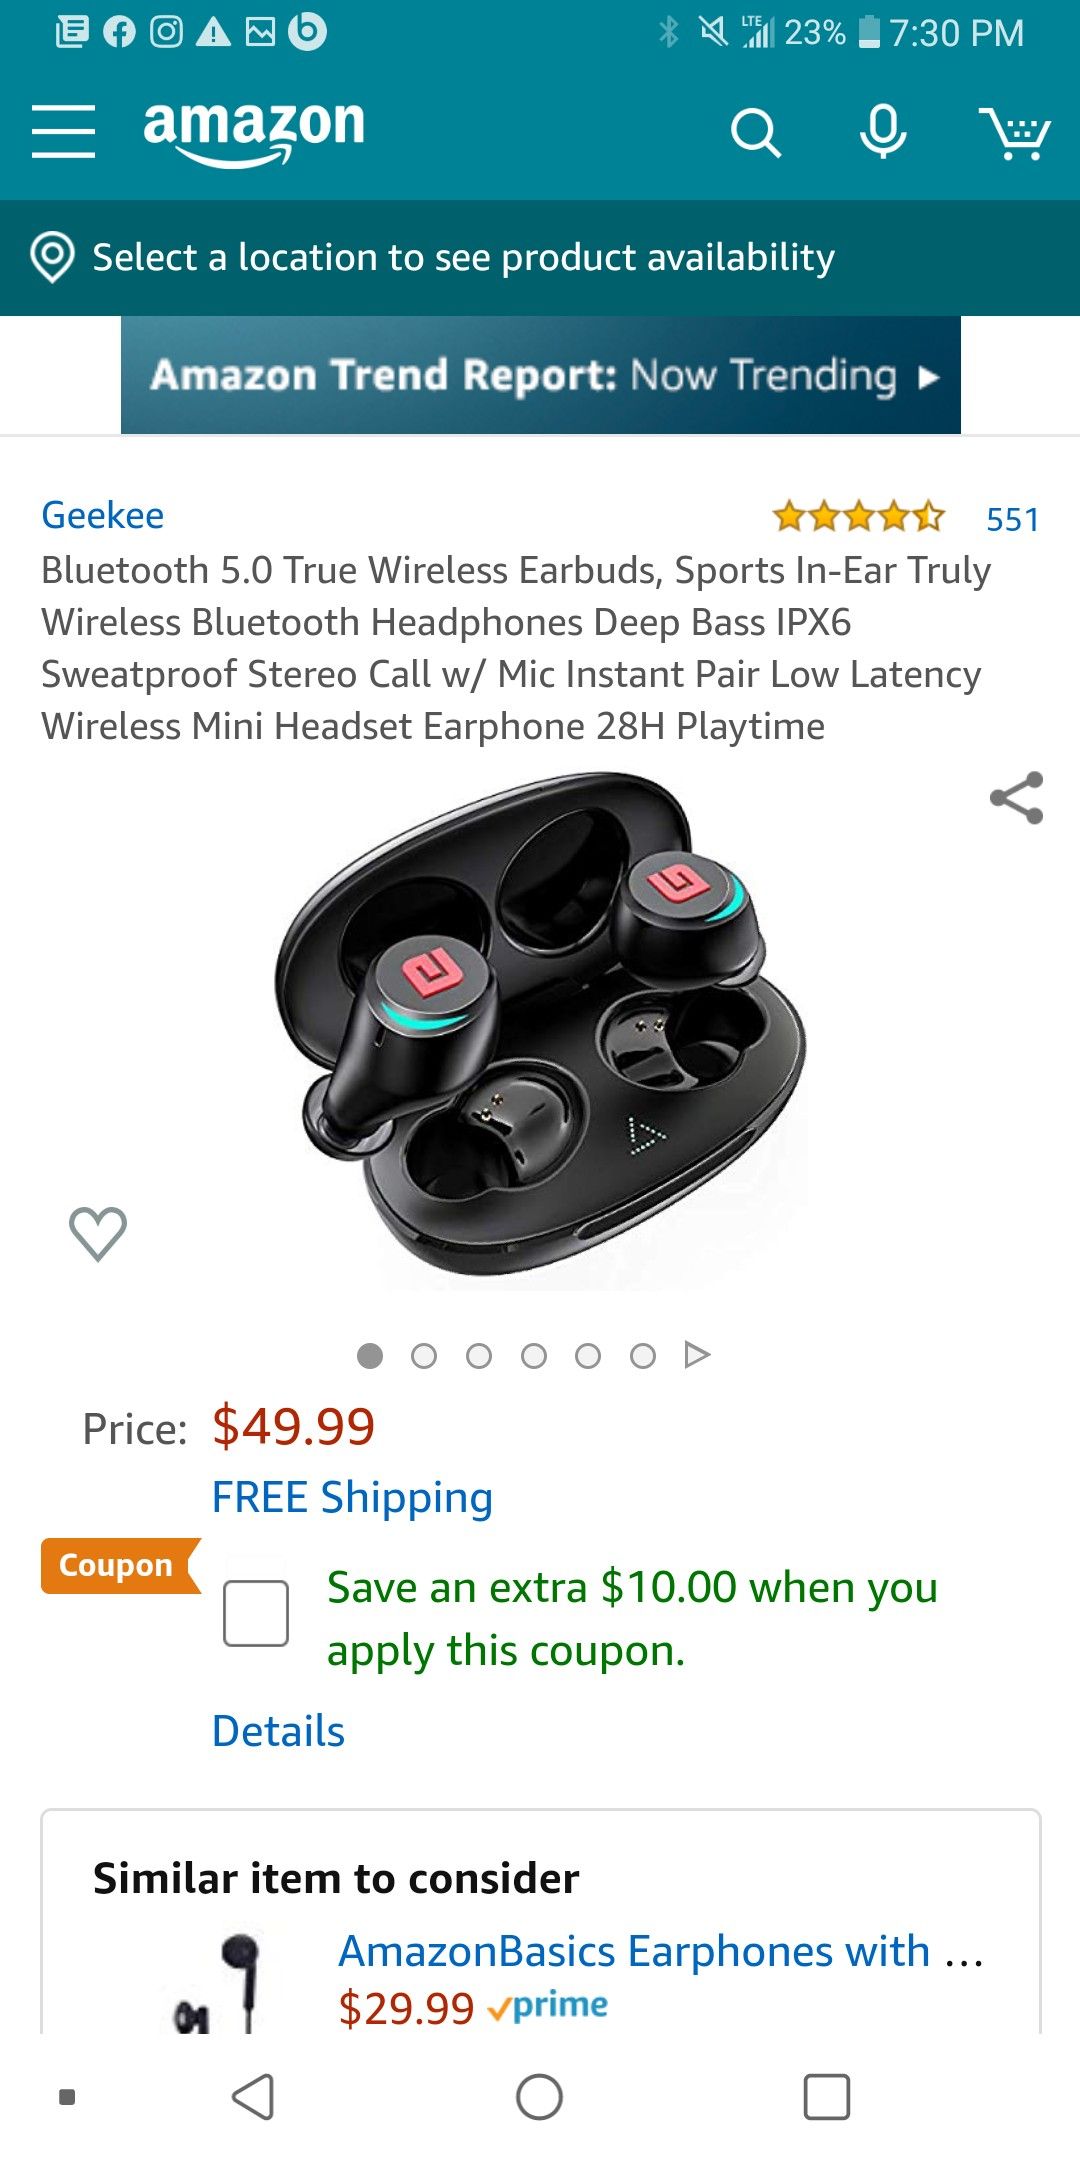 Geekee full wireless earbuds